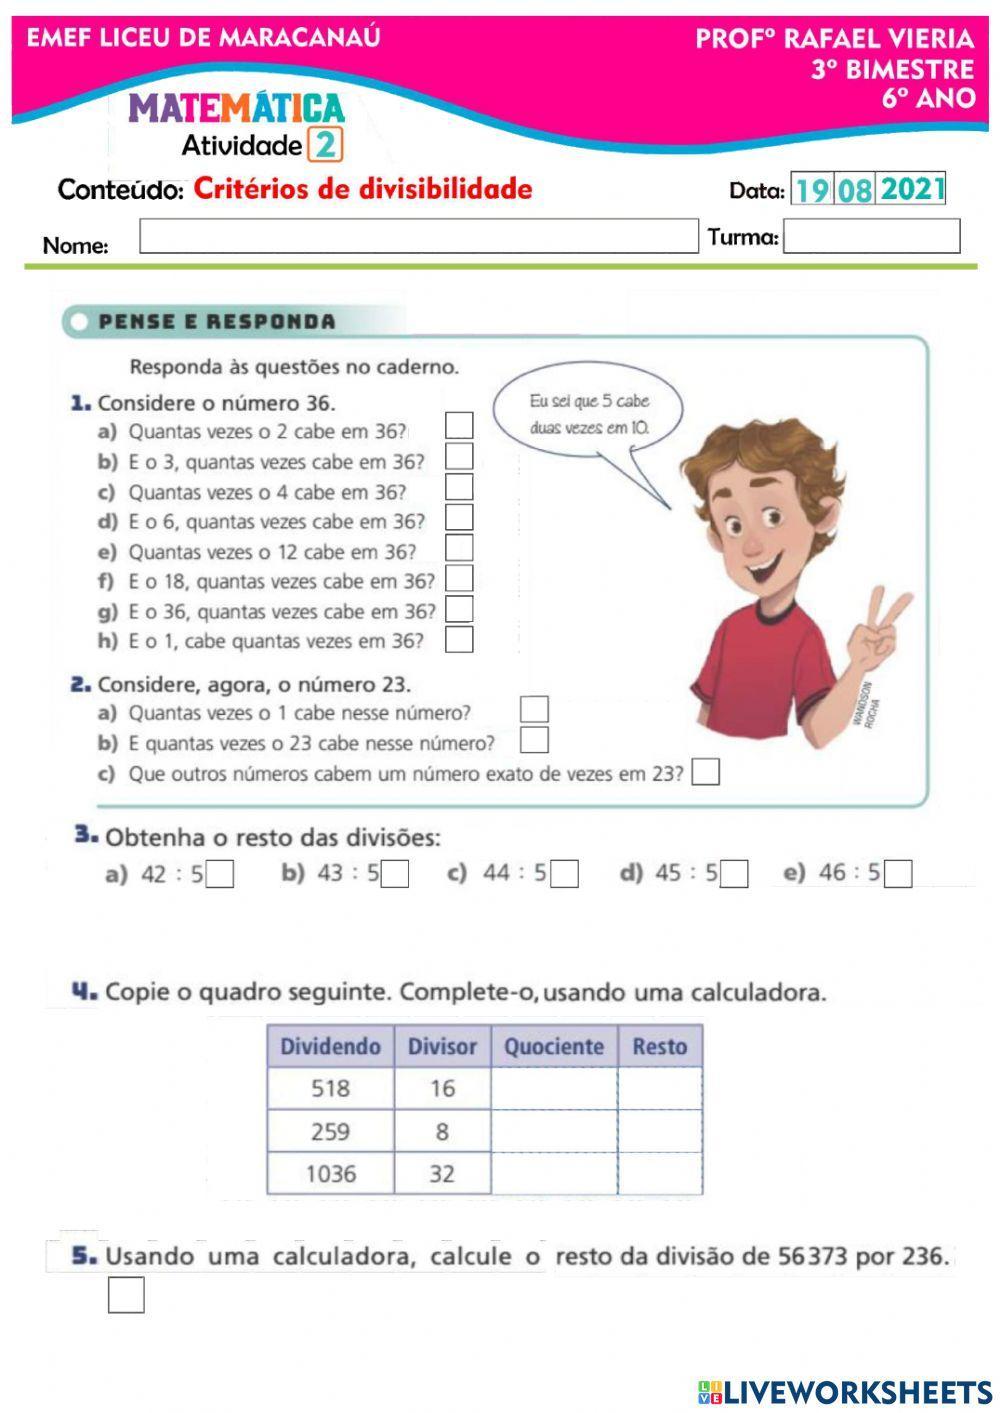 BRINCANDO COM MÚLTIPLOS E DIVISORES - Departamento de Matemática